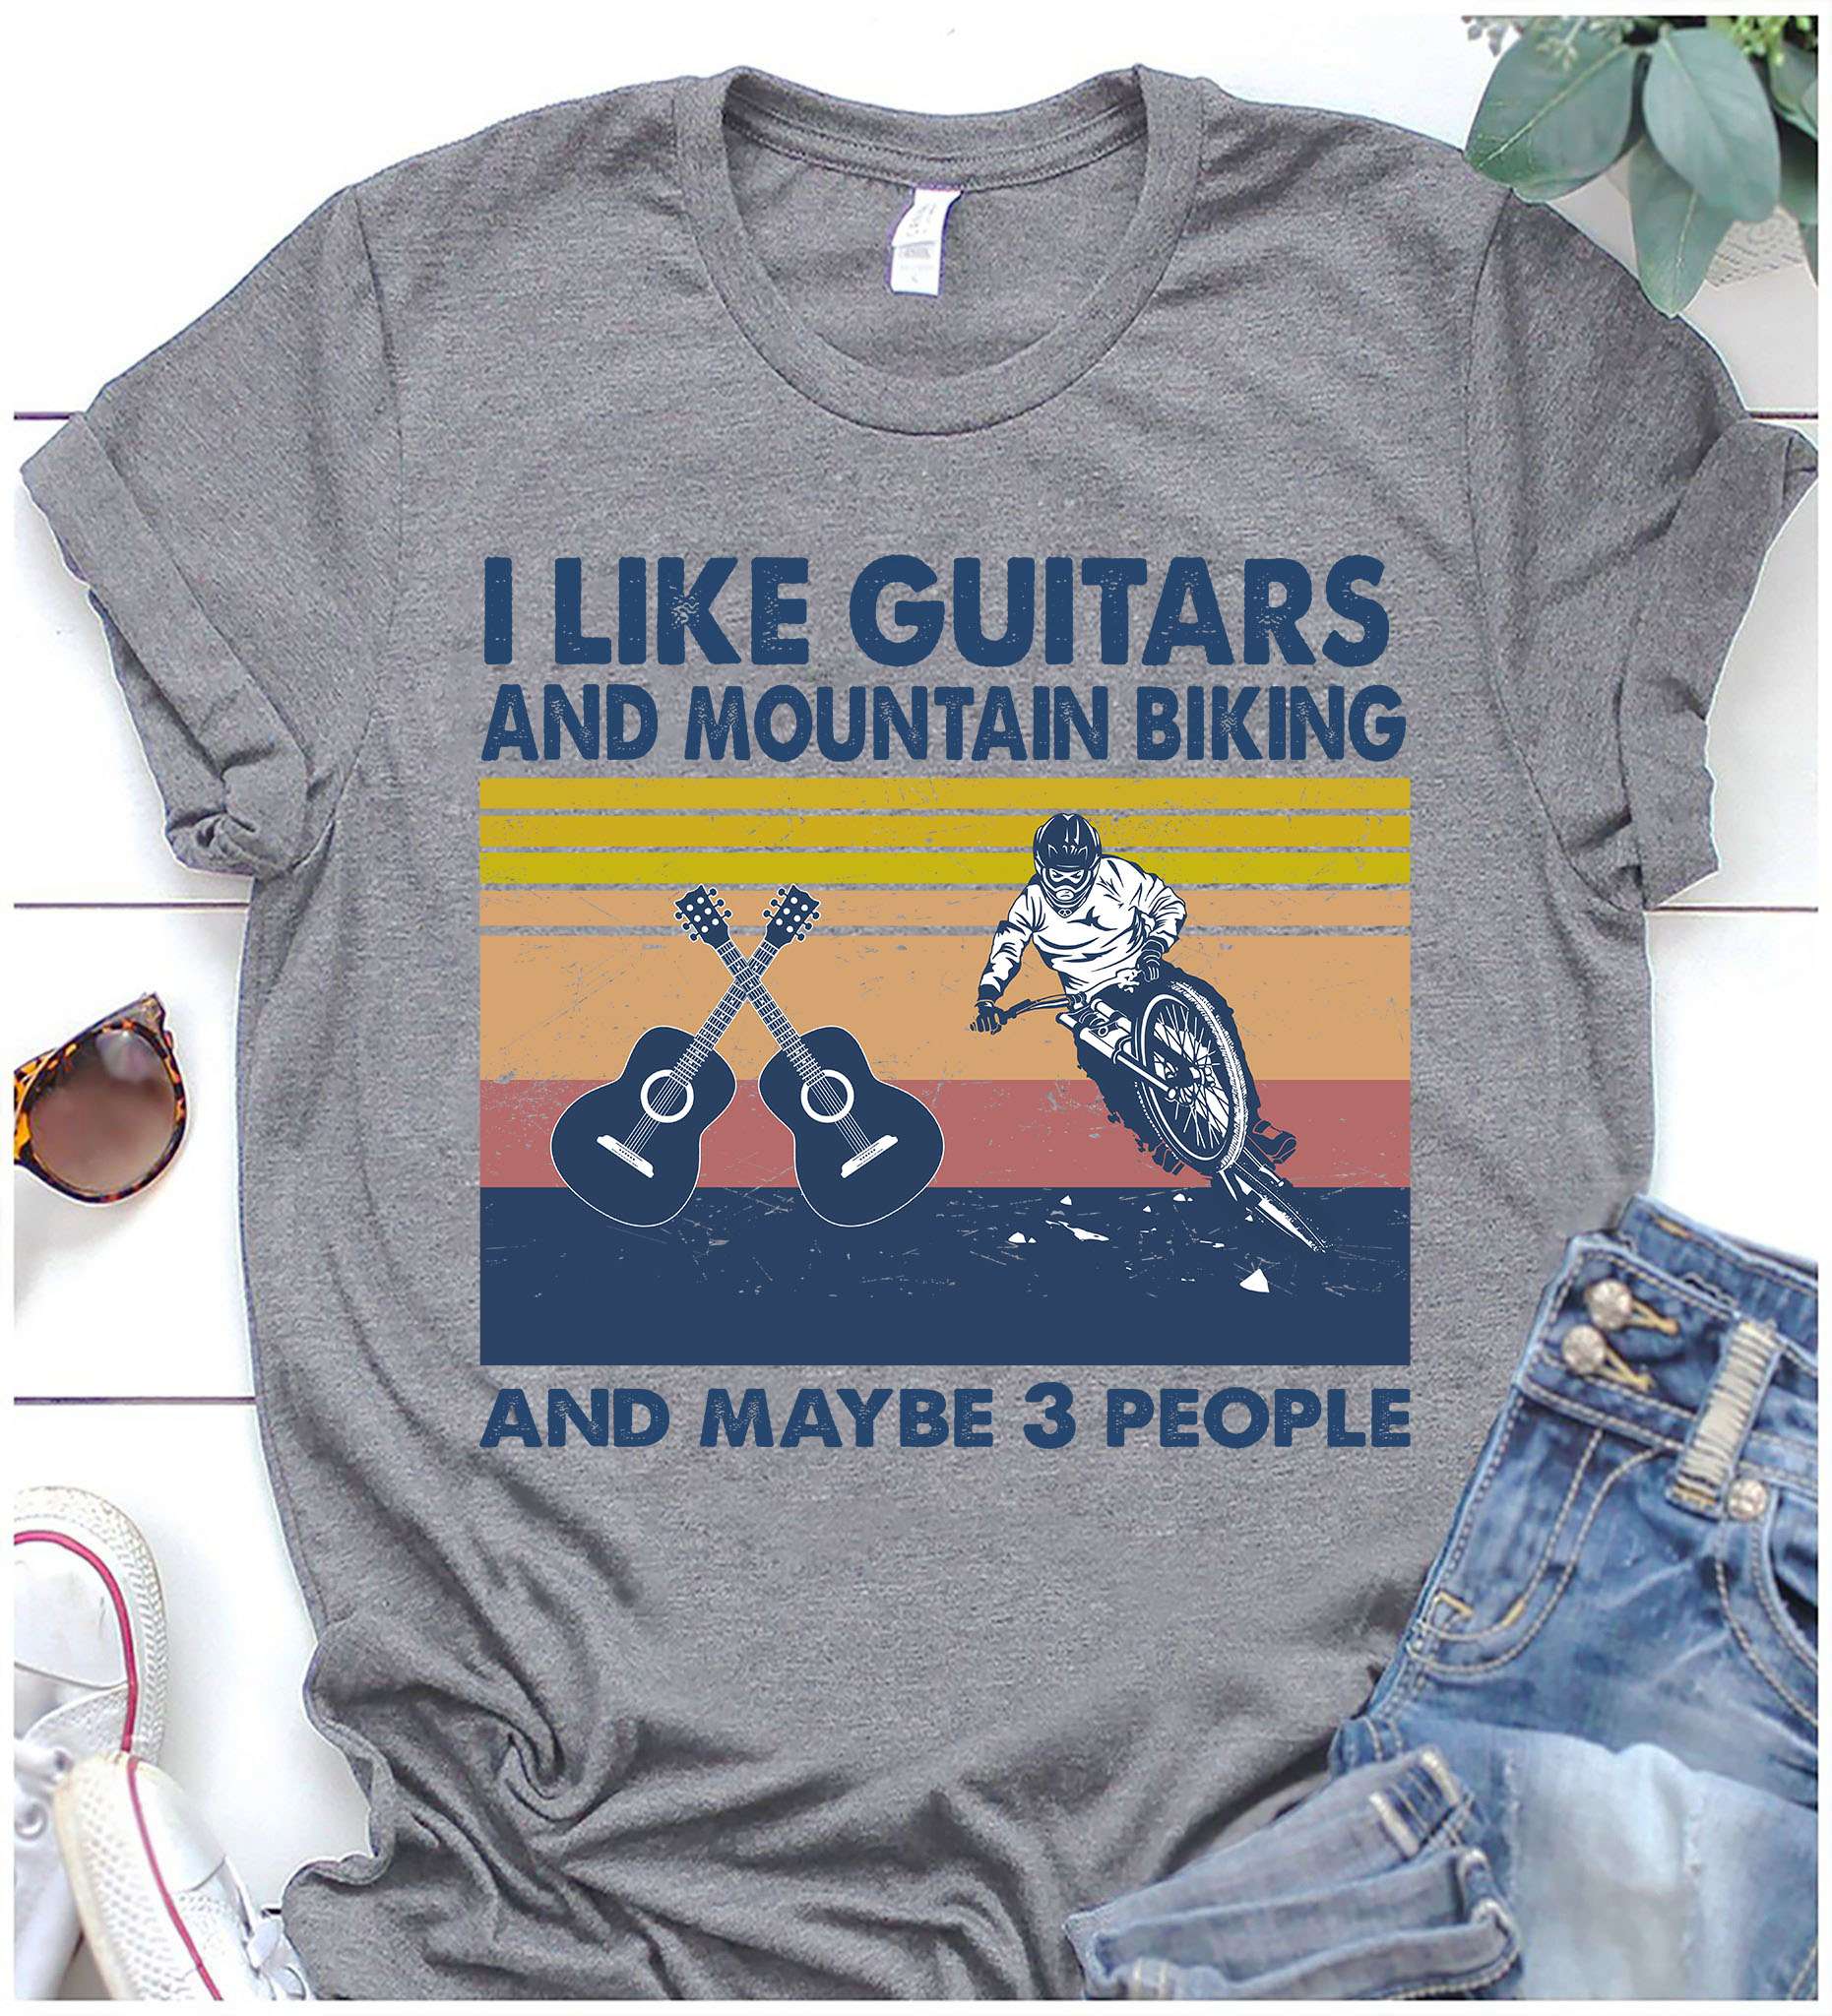 Mountain Biking And Guitar - I like guitars and mountain biking and maybe 3 people